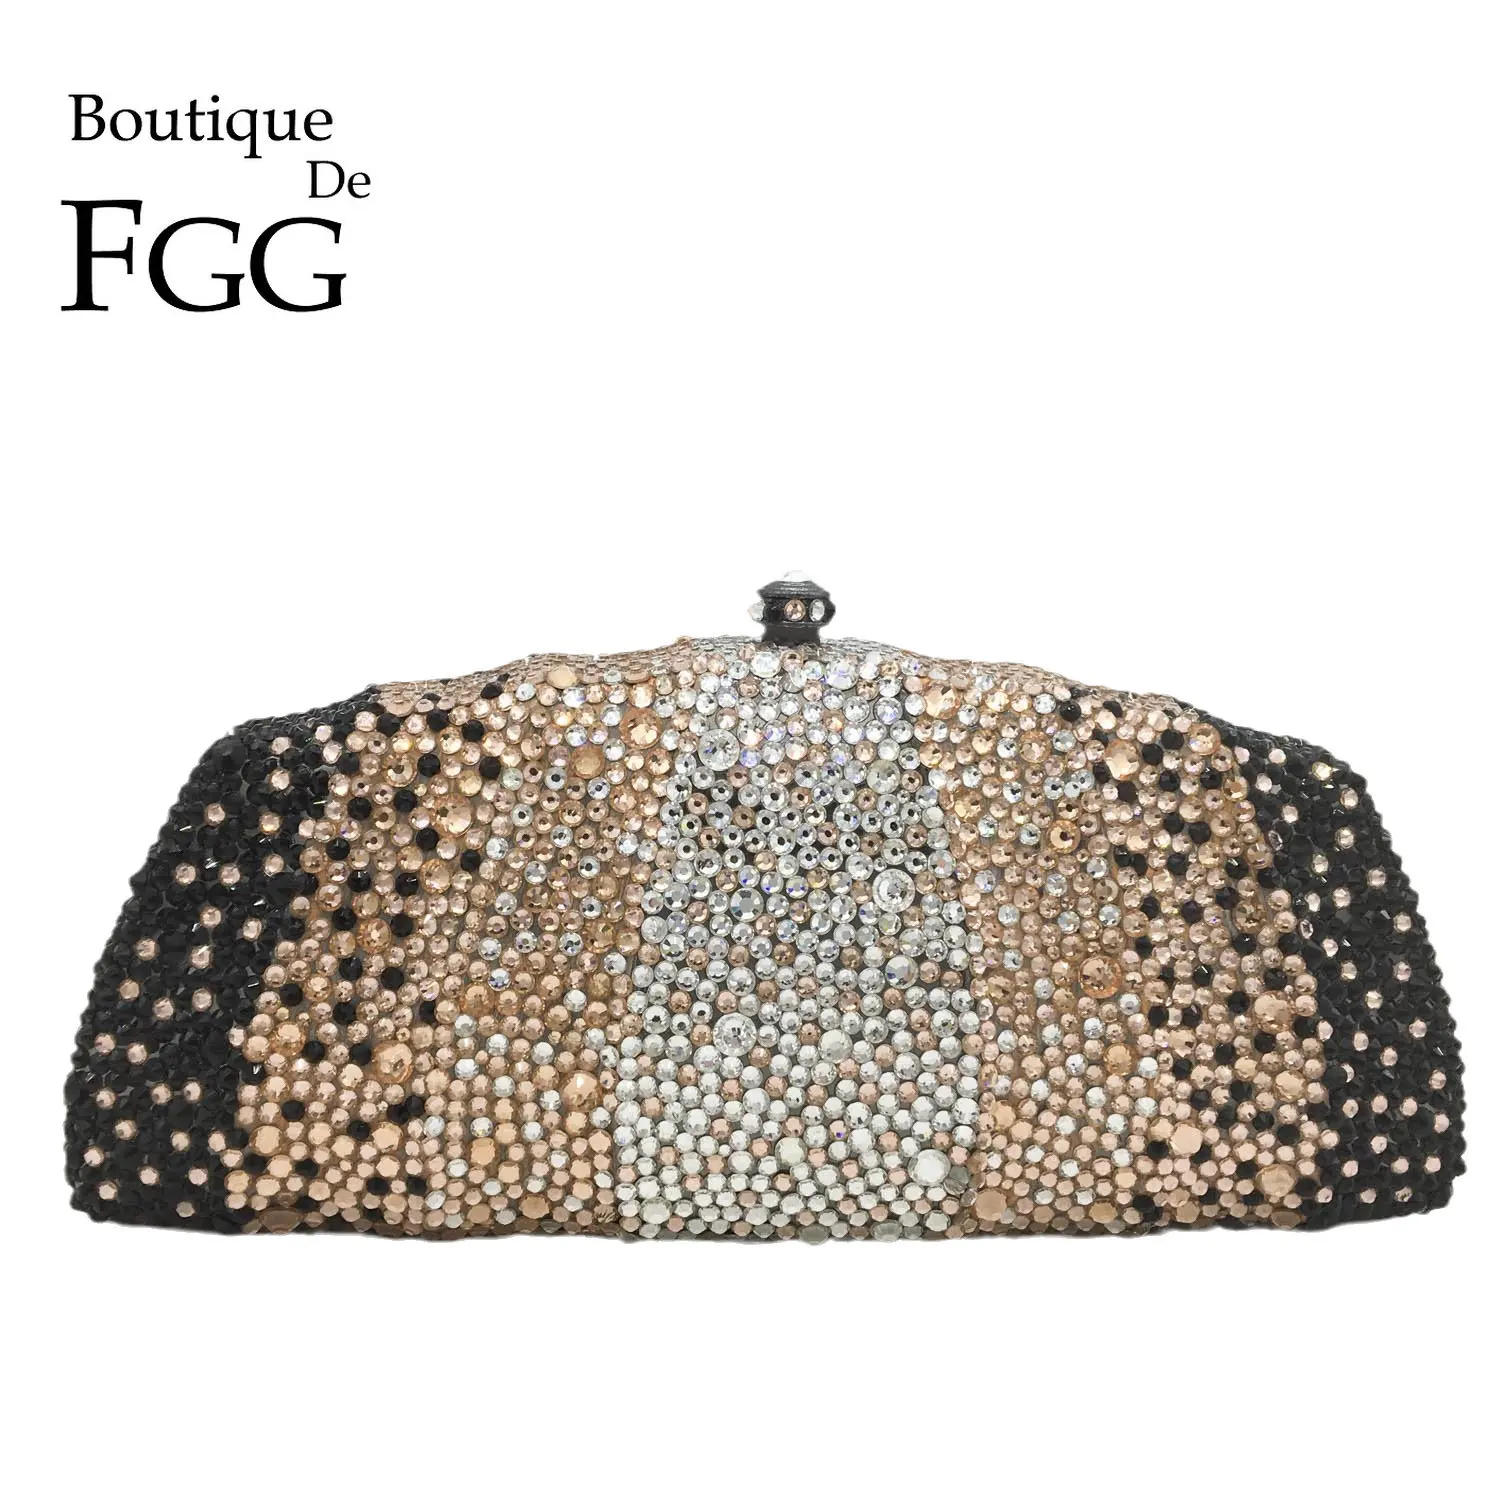 Boutique De FGG Elegant Women Crystal Clutch Evening Purses Bridal Wedding Party Clutch Minaudiere Rhinestone Handbags